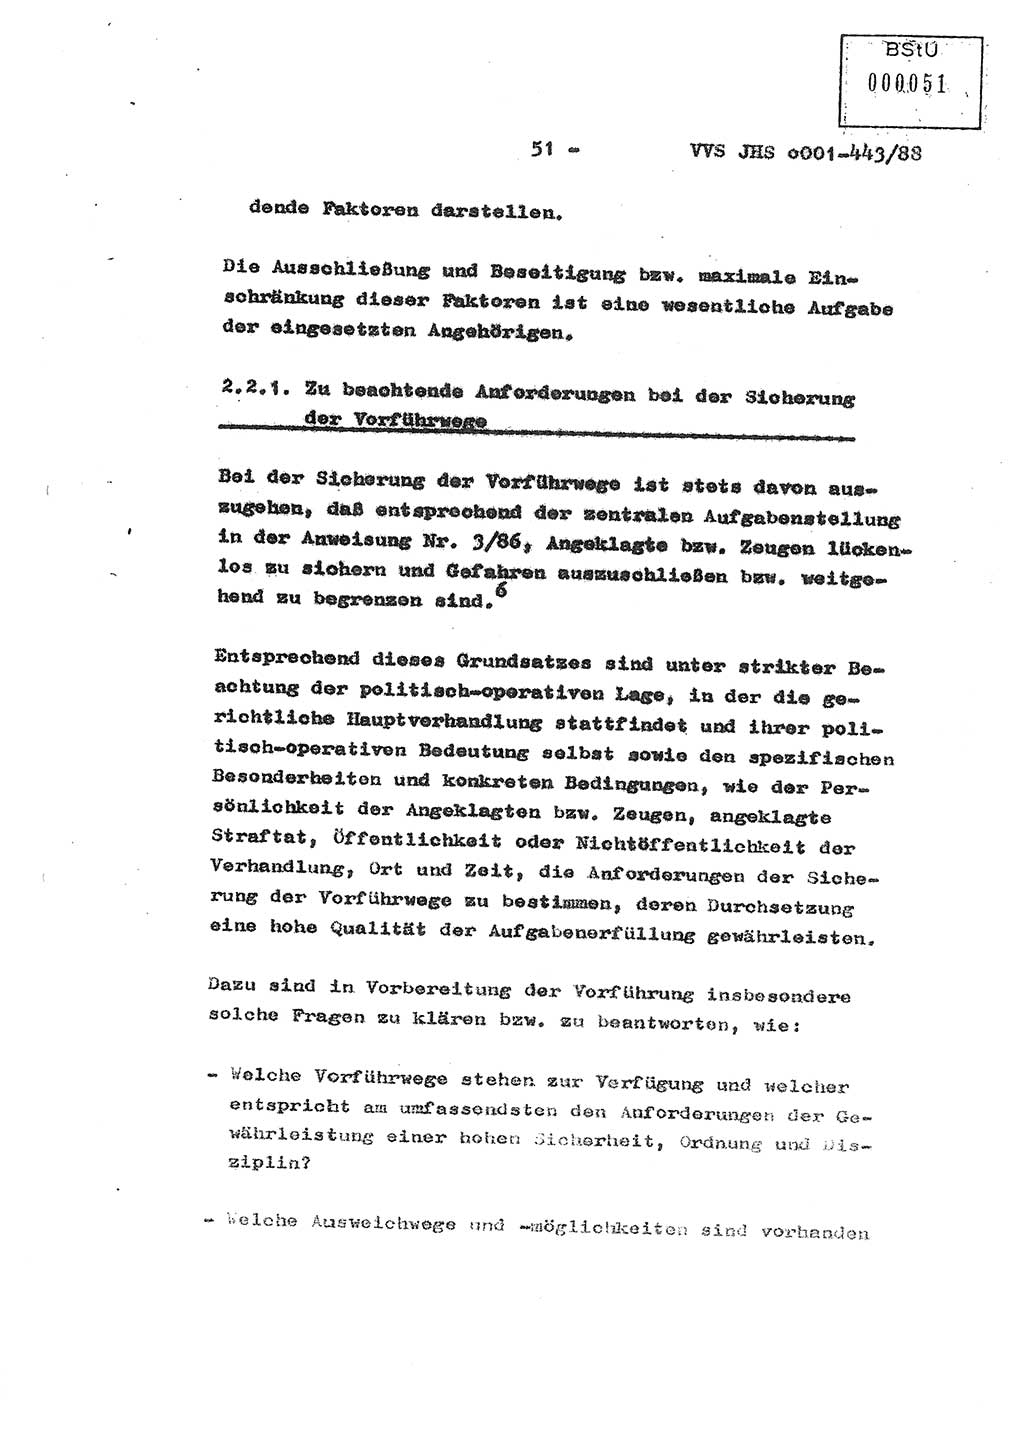 Diplomarbeit Hauptmann Michael Rast (Abt. ⅩⅣ), Major Bernd Rahaus (Abt. ⅩⅣ), Ministerium für Staatssicherheit (MfS) [Deutsche Demokratische Republik (DDR)], Juristische Hochschule (JHS), Vertrauliche Verschlußsache (VVS) o001-443/88, Potsdam 1988, Seite 51 (Dipl.-Arb. MfS DDR JHS VVS o001-443/88 1988, S. 51)